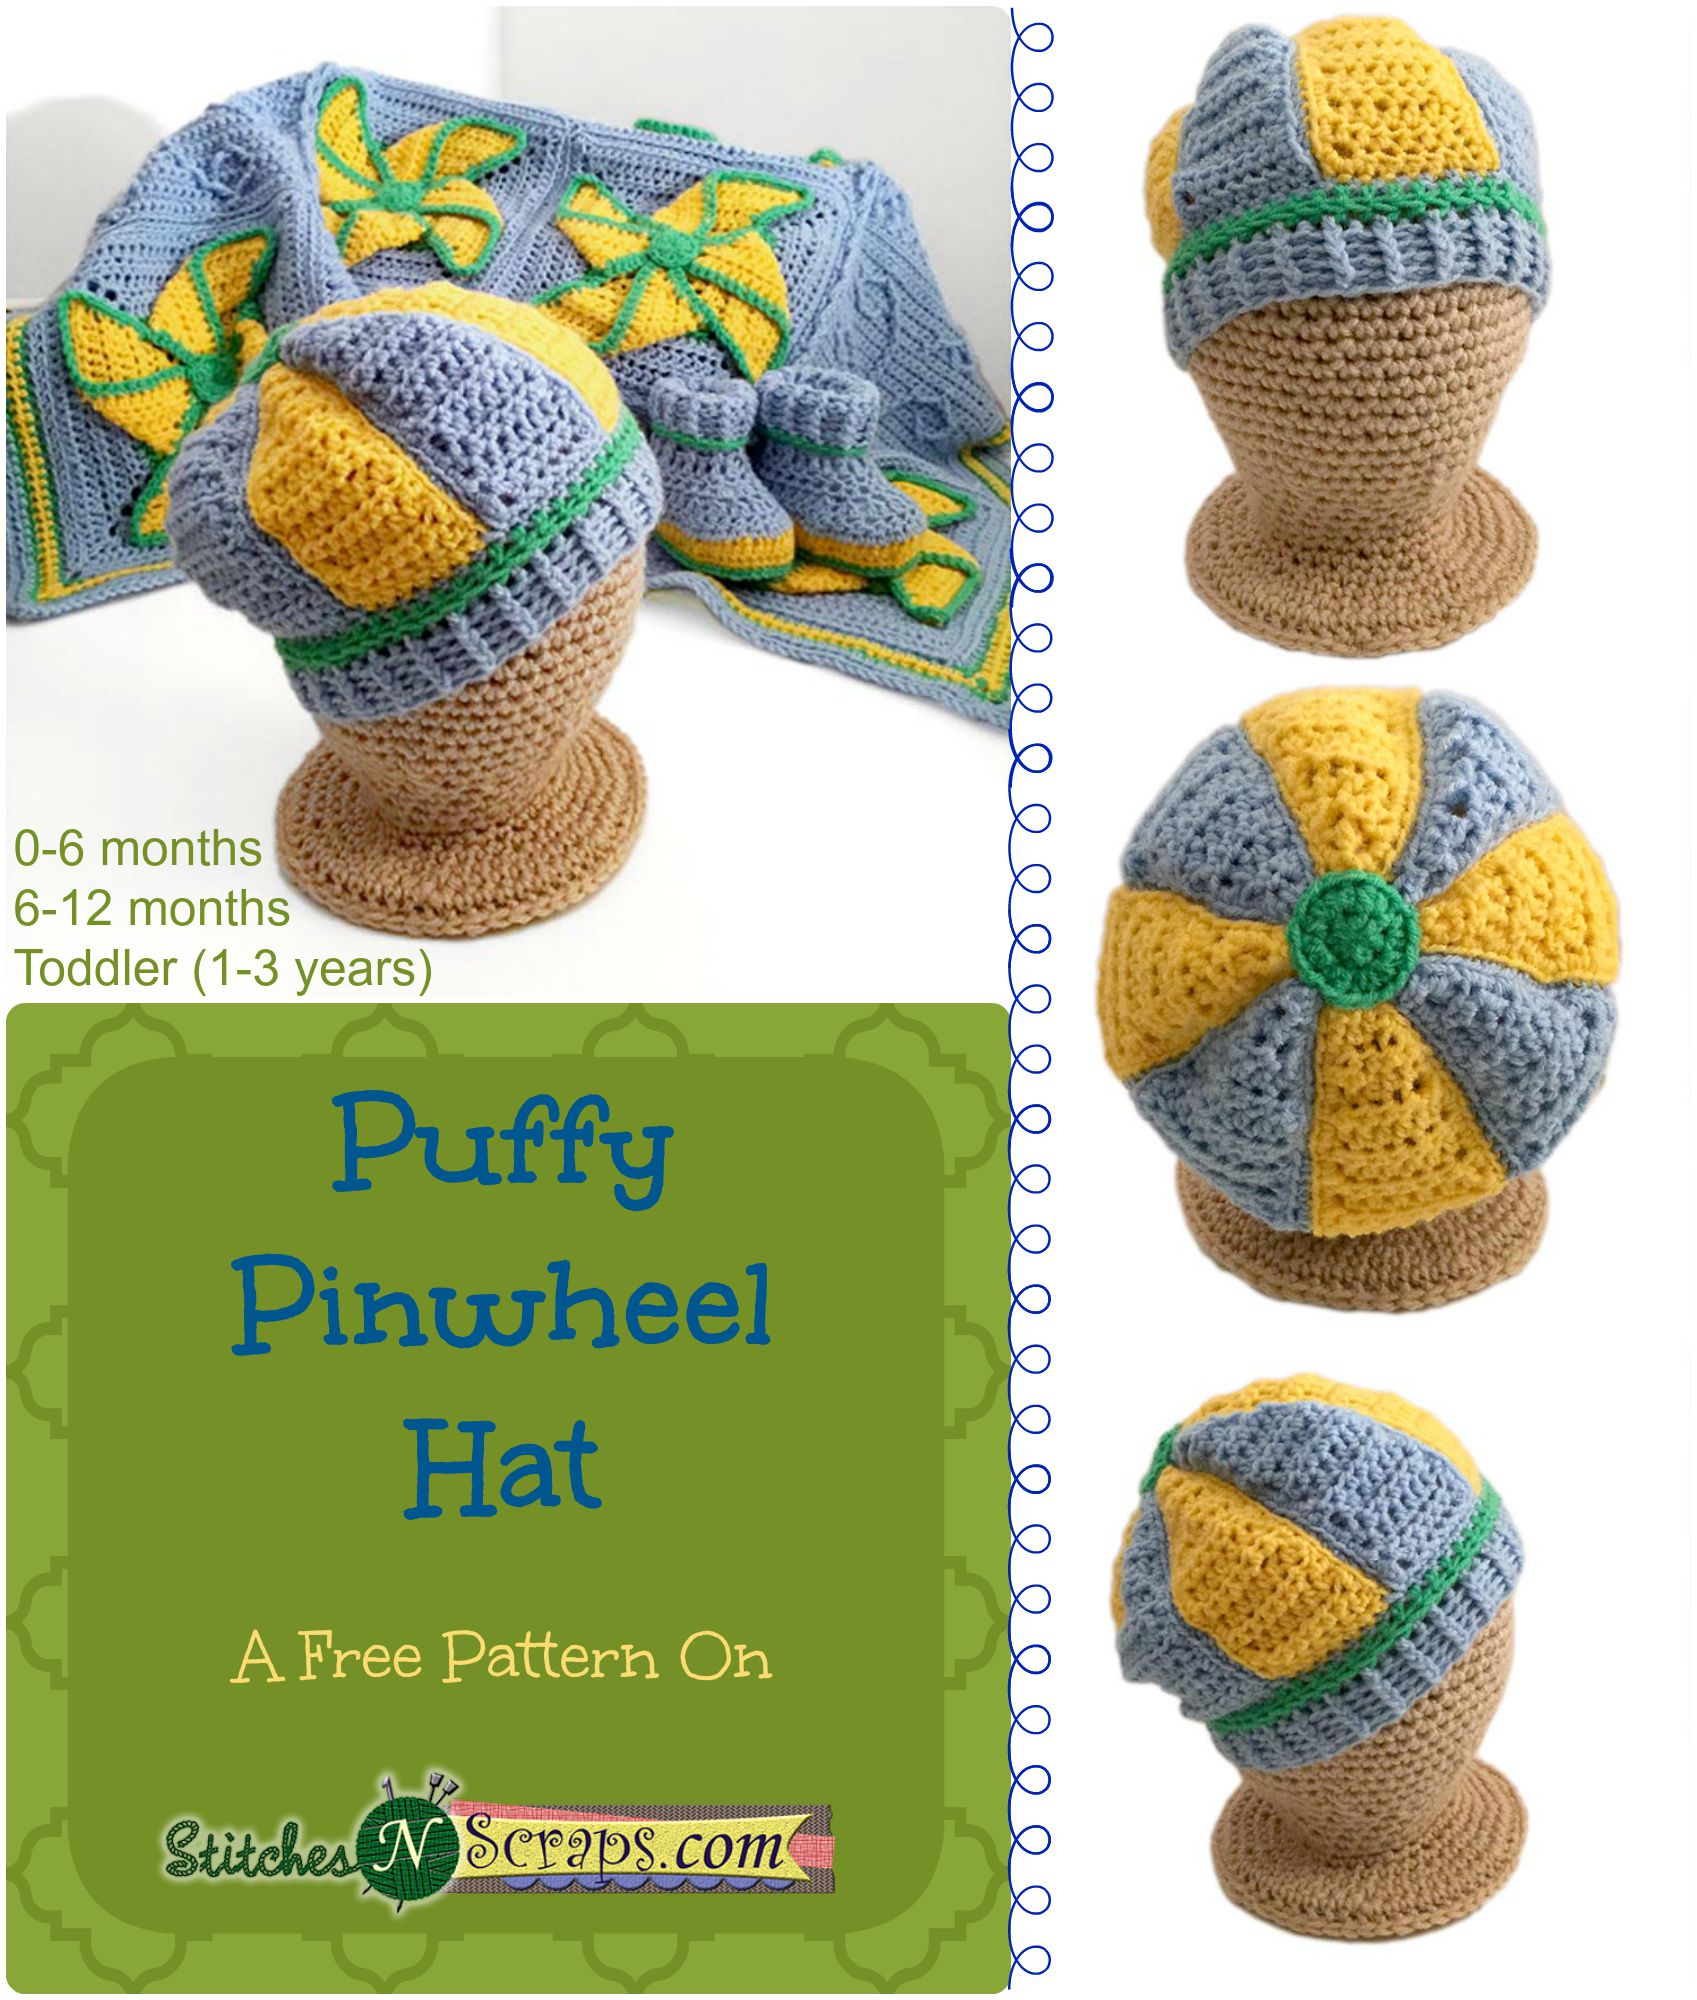 Puffy Pinwheel Hat image collage